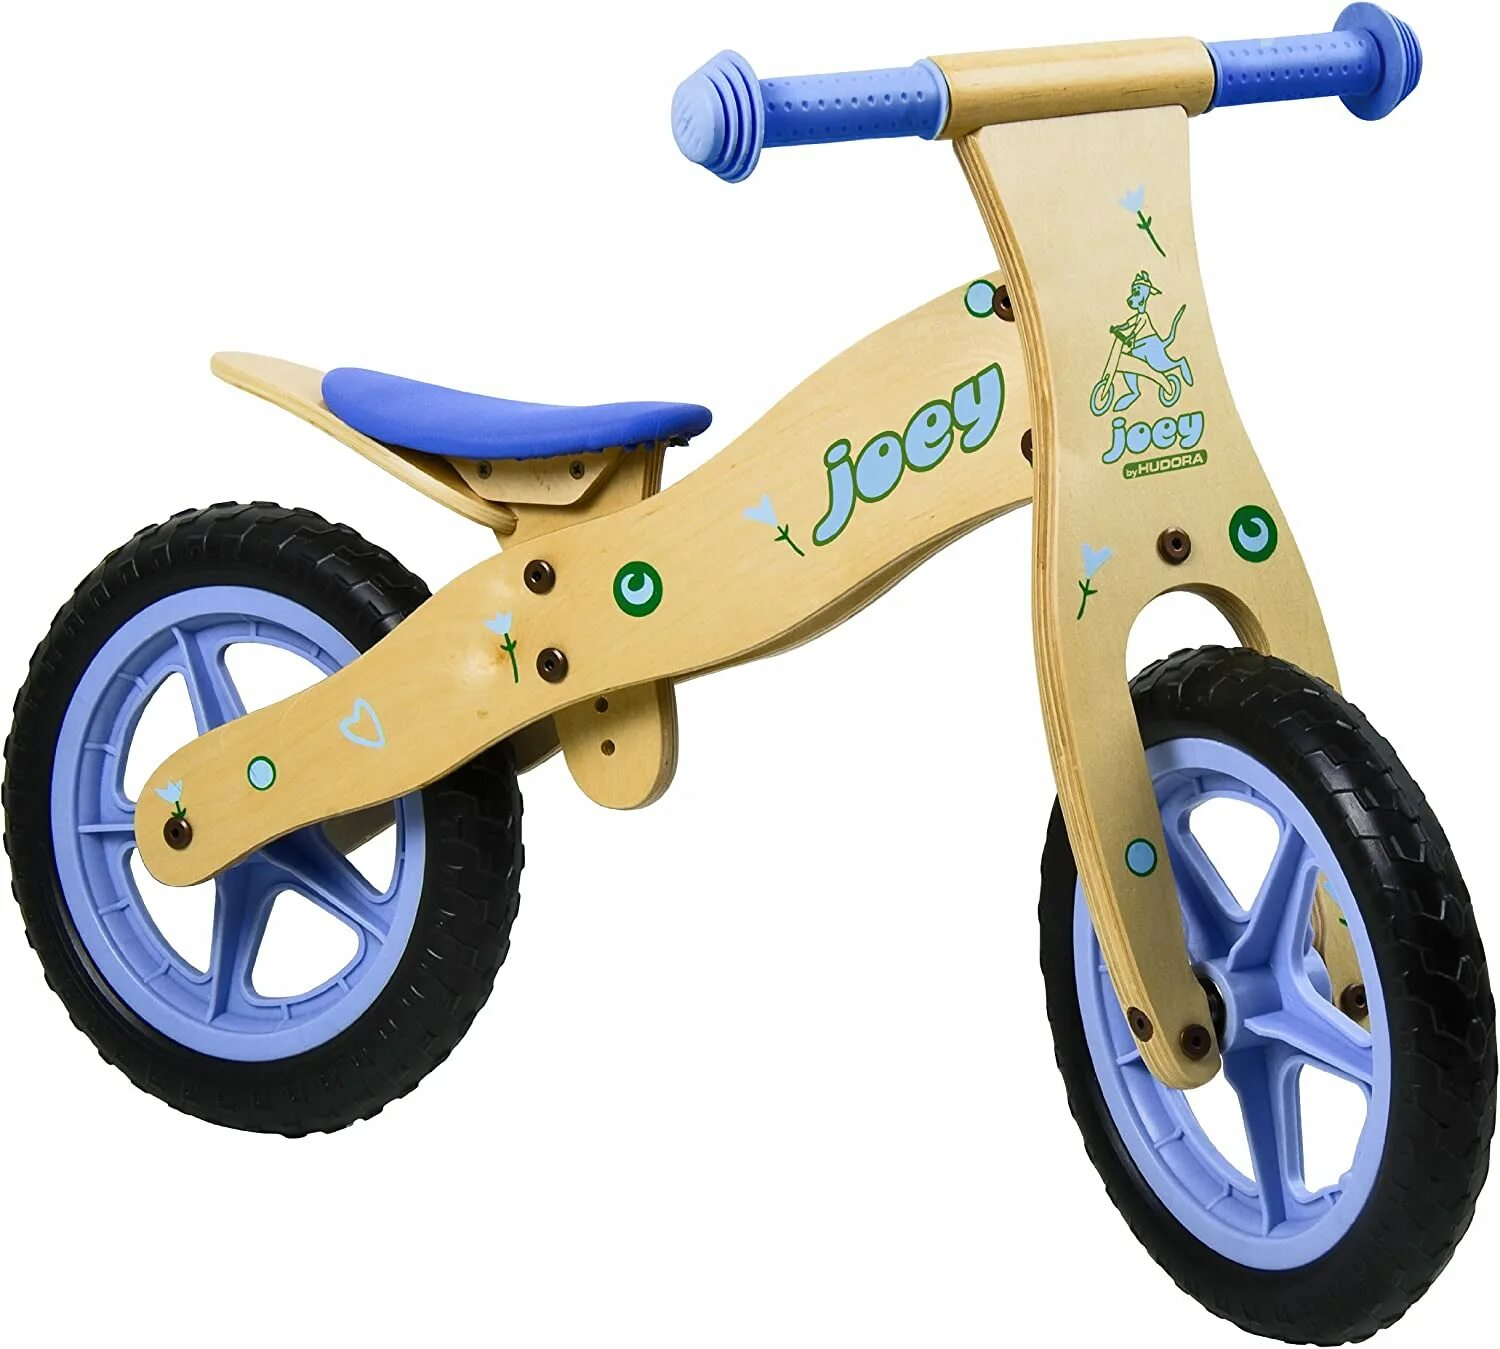 Беговелы екатеринбург. Беговел Forest Kids Cort. Беговел JOOEQ. Беговел Joey. Balance Bike Plus беговел kyooty.